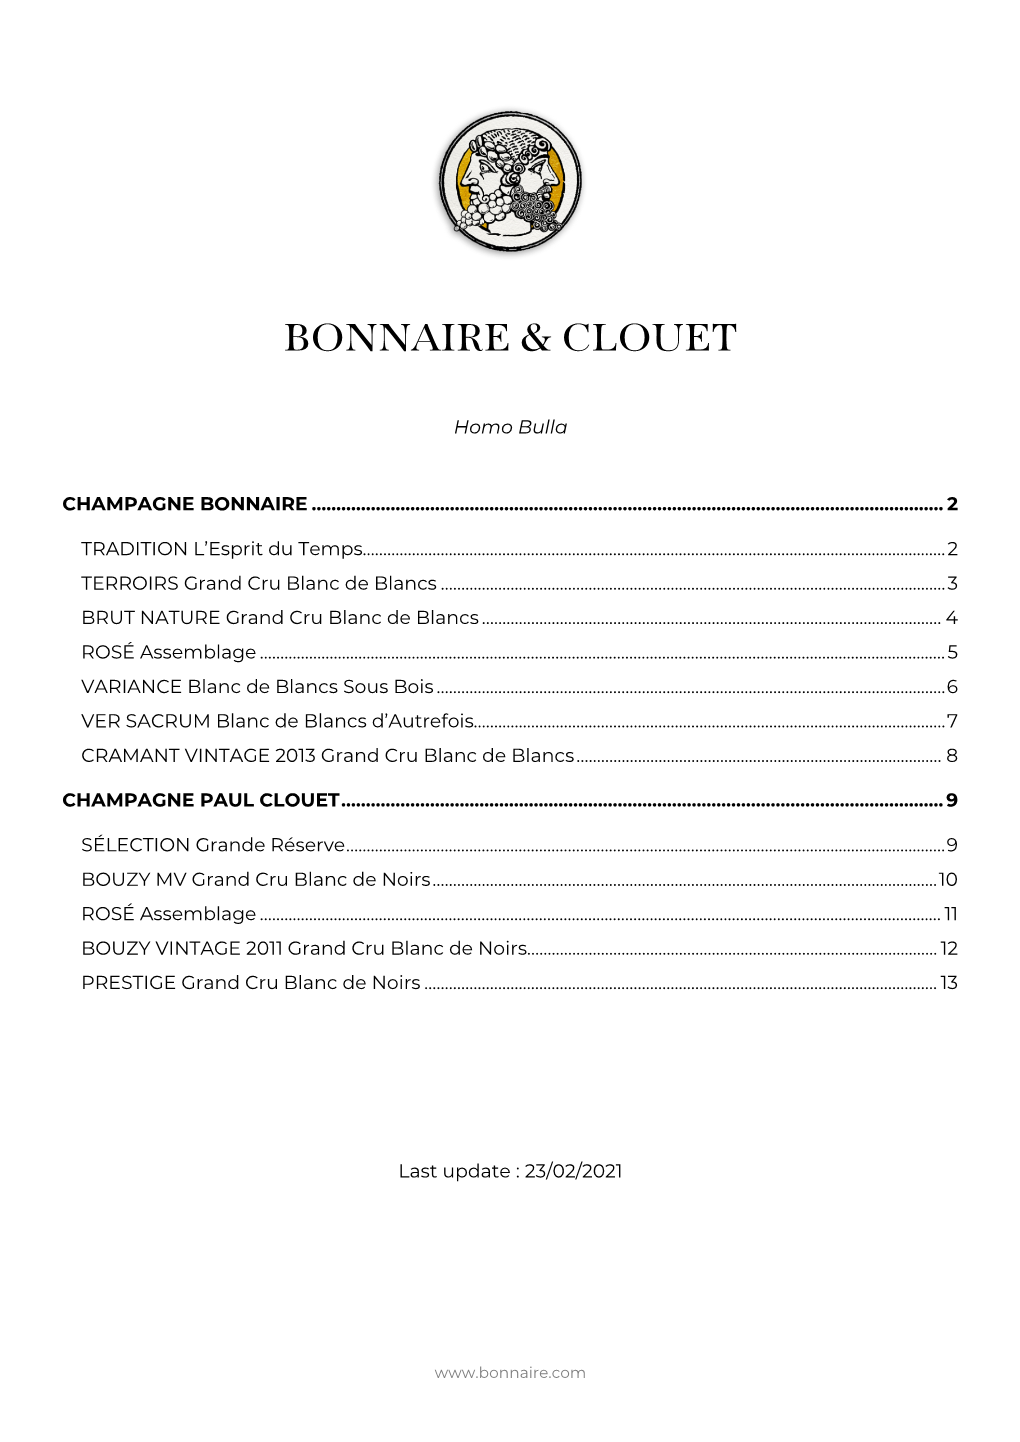 Bonnaire & Clouet